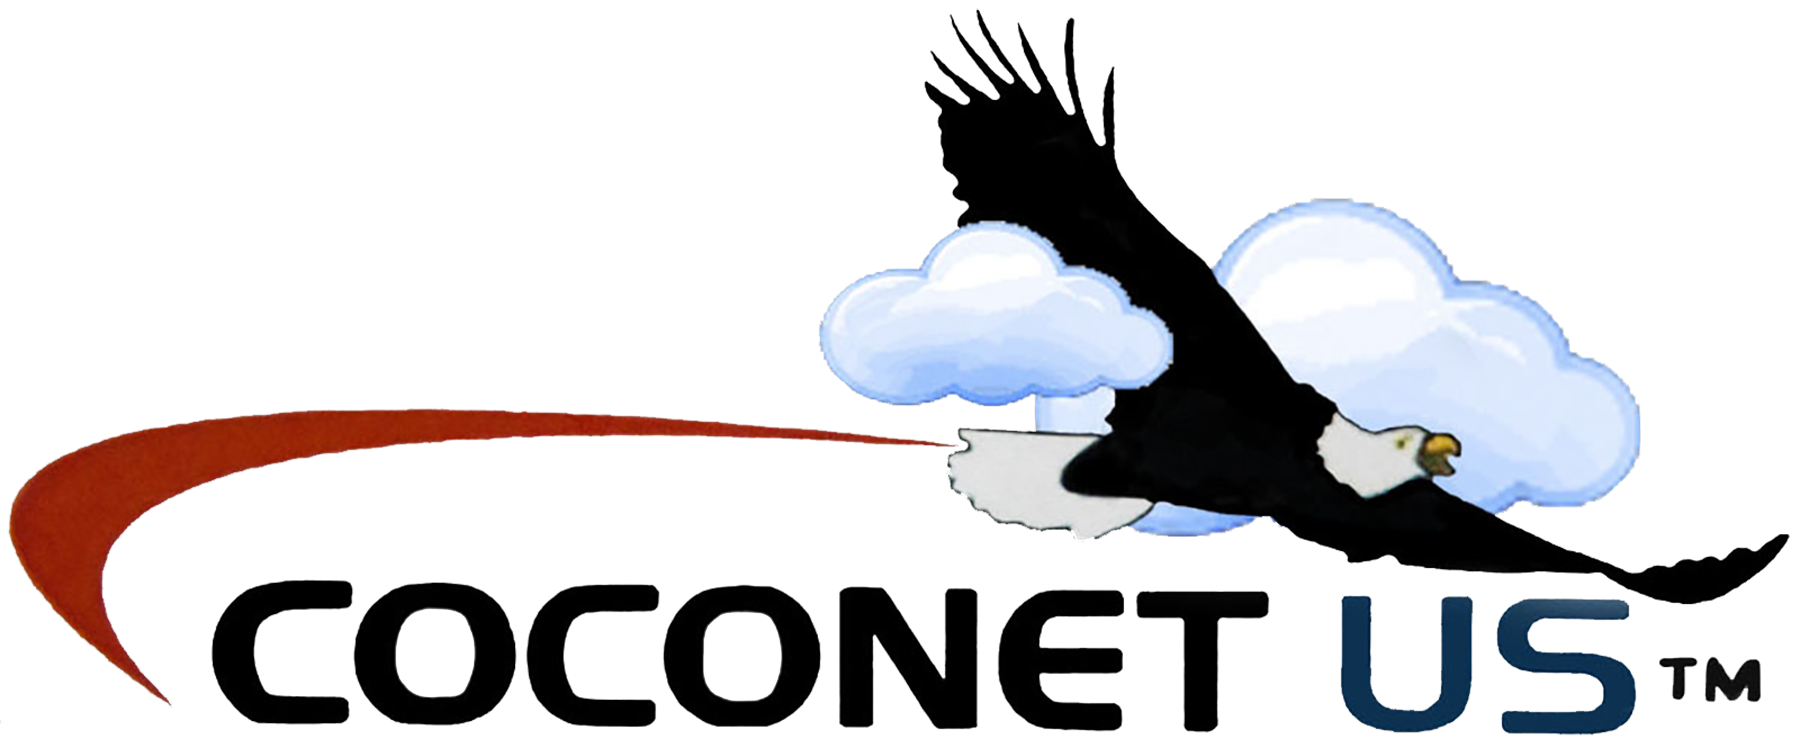 COCONET-US_Ecommerce